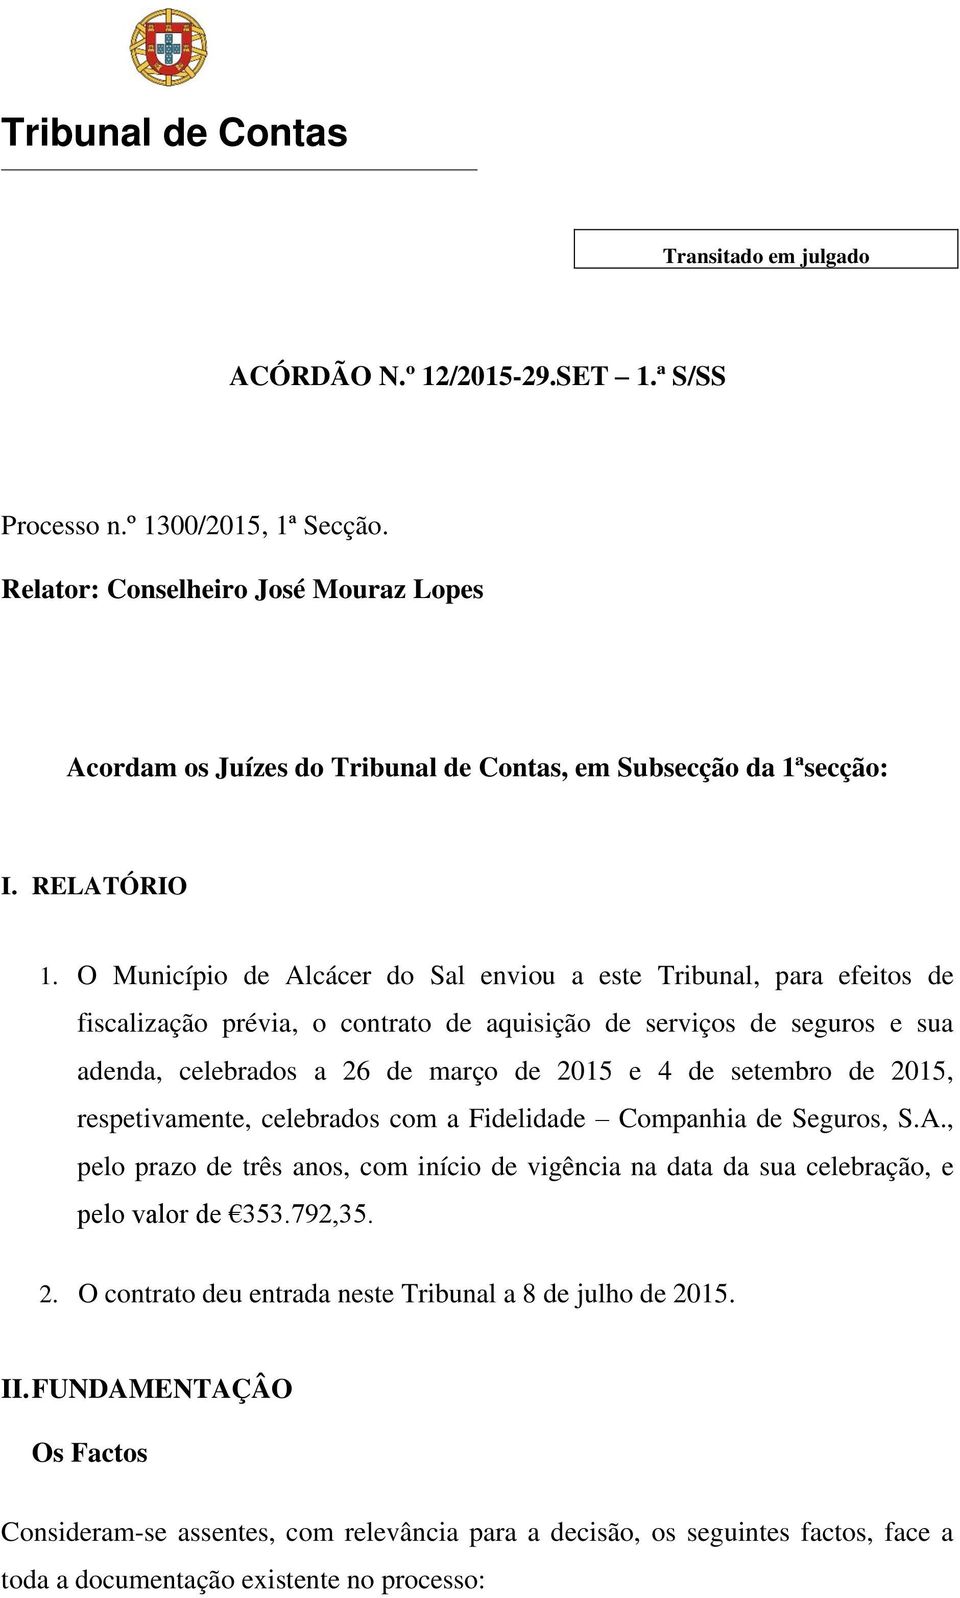 O Município de Alcácer do Sal enviou a este Tribunal, para efeitos de fiscalização prévia, o contrato de aquisição de serviços de seguros e sua adenda, celebrados a 26 de março de 2015 e 4 de